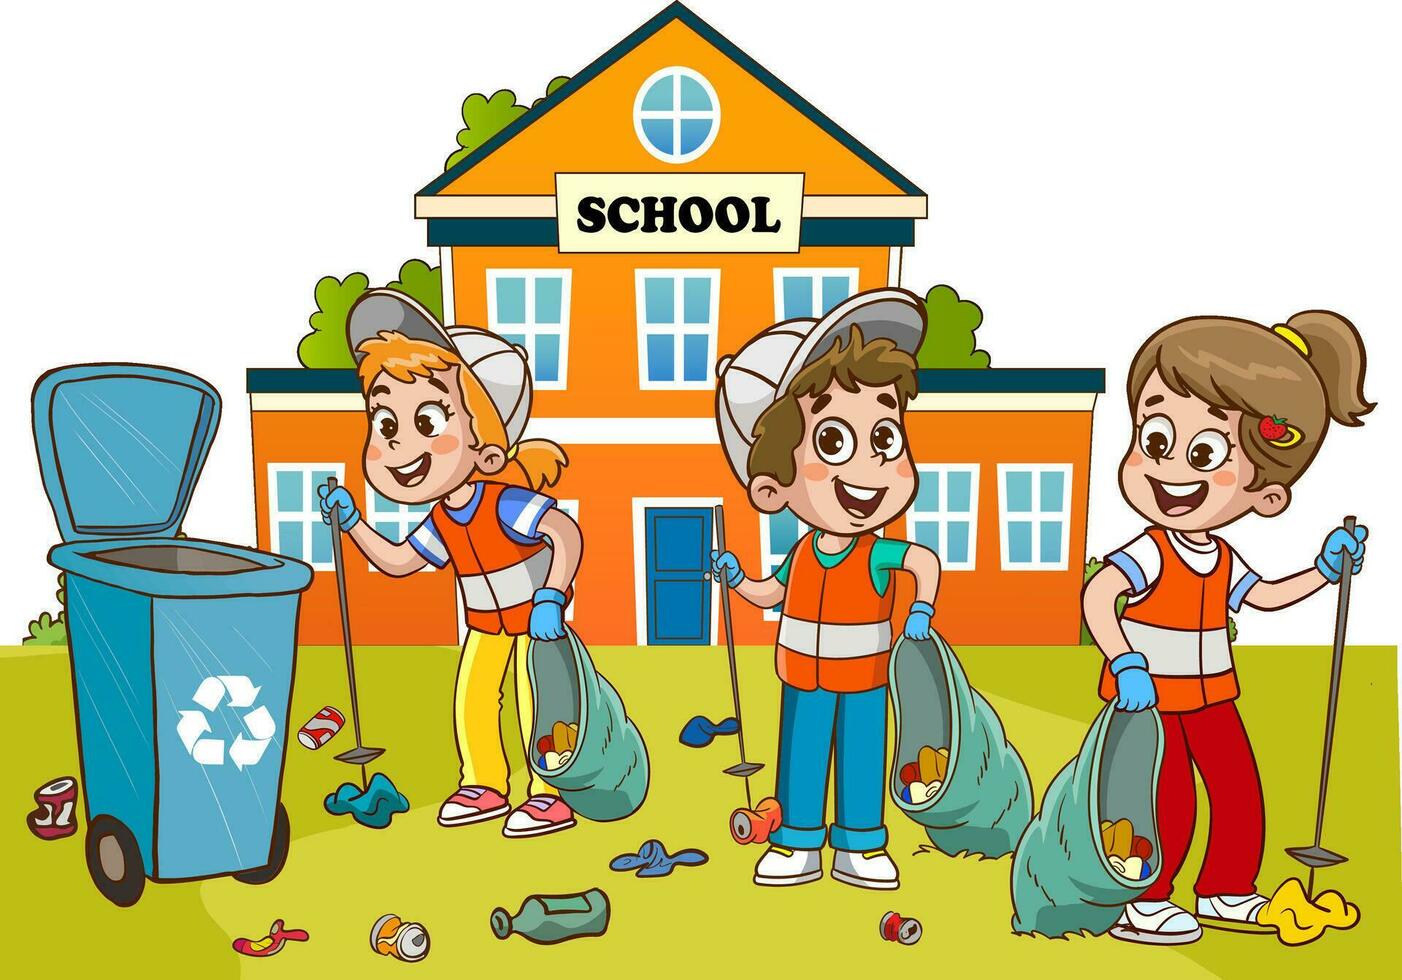 kinderen schoon omhoog tuin of park van afval, vrijwilligers verzamelen plastic flessen en blikjes vector